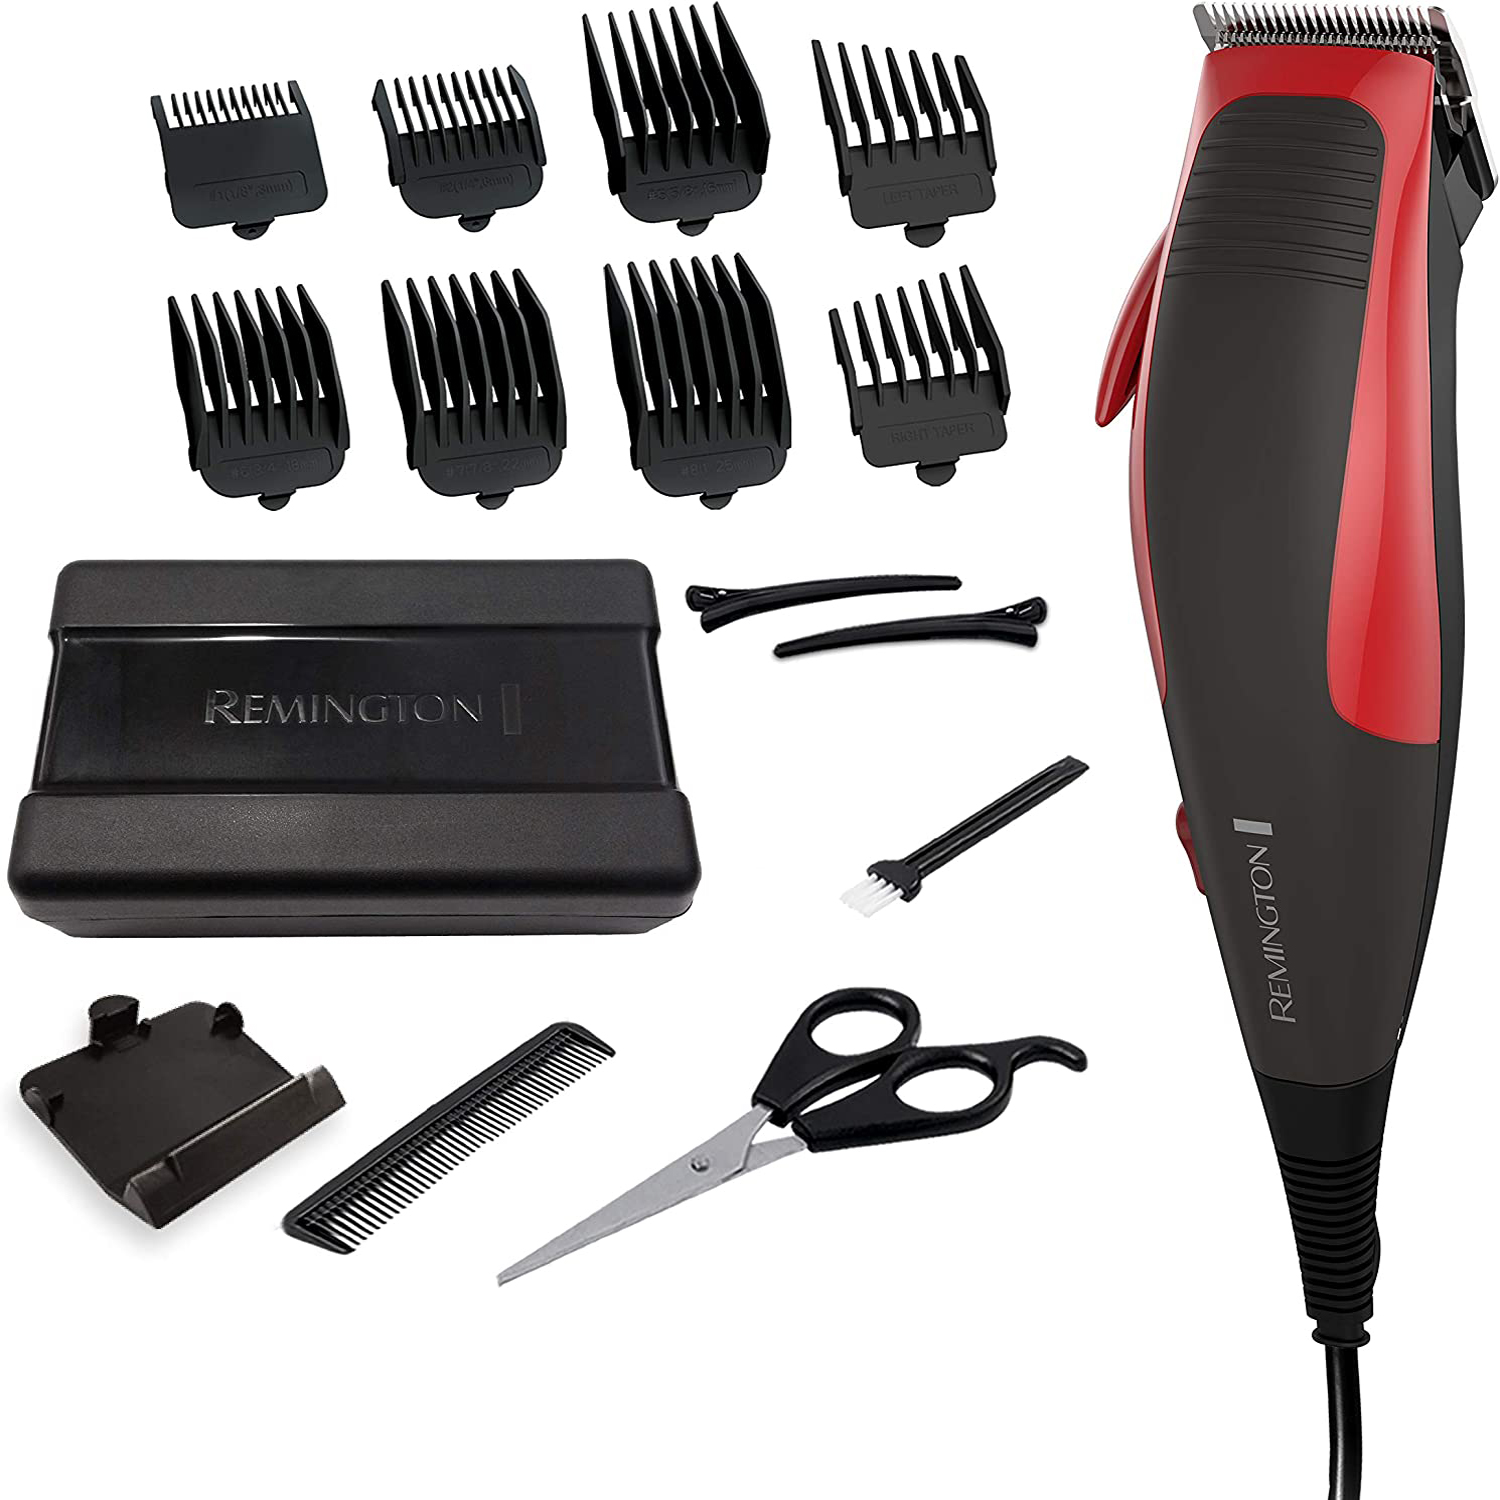 Remington - Hair cutting kit with storage case